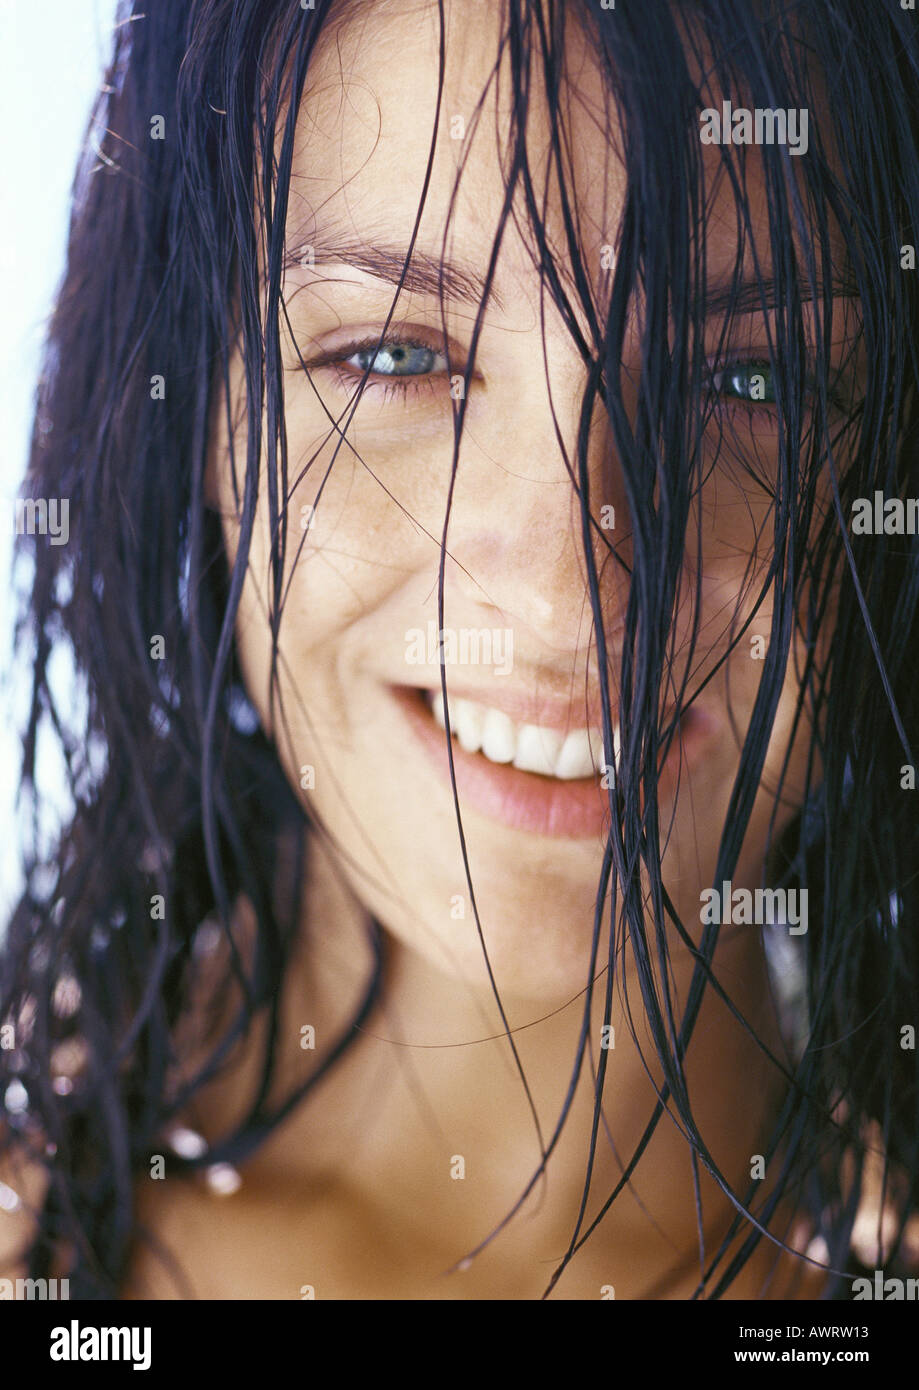 Femme avec les cheveux mouillés, close-up Banque D'Images